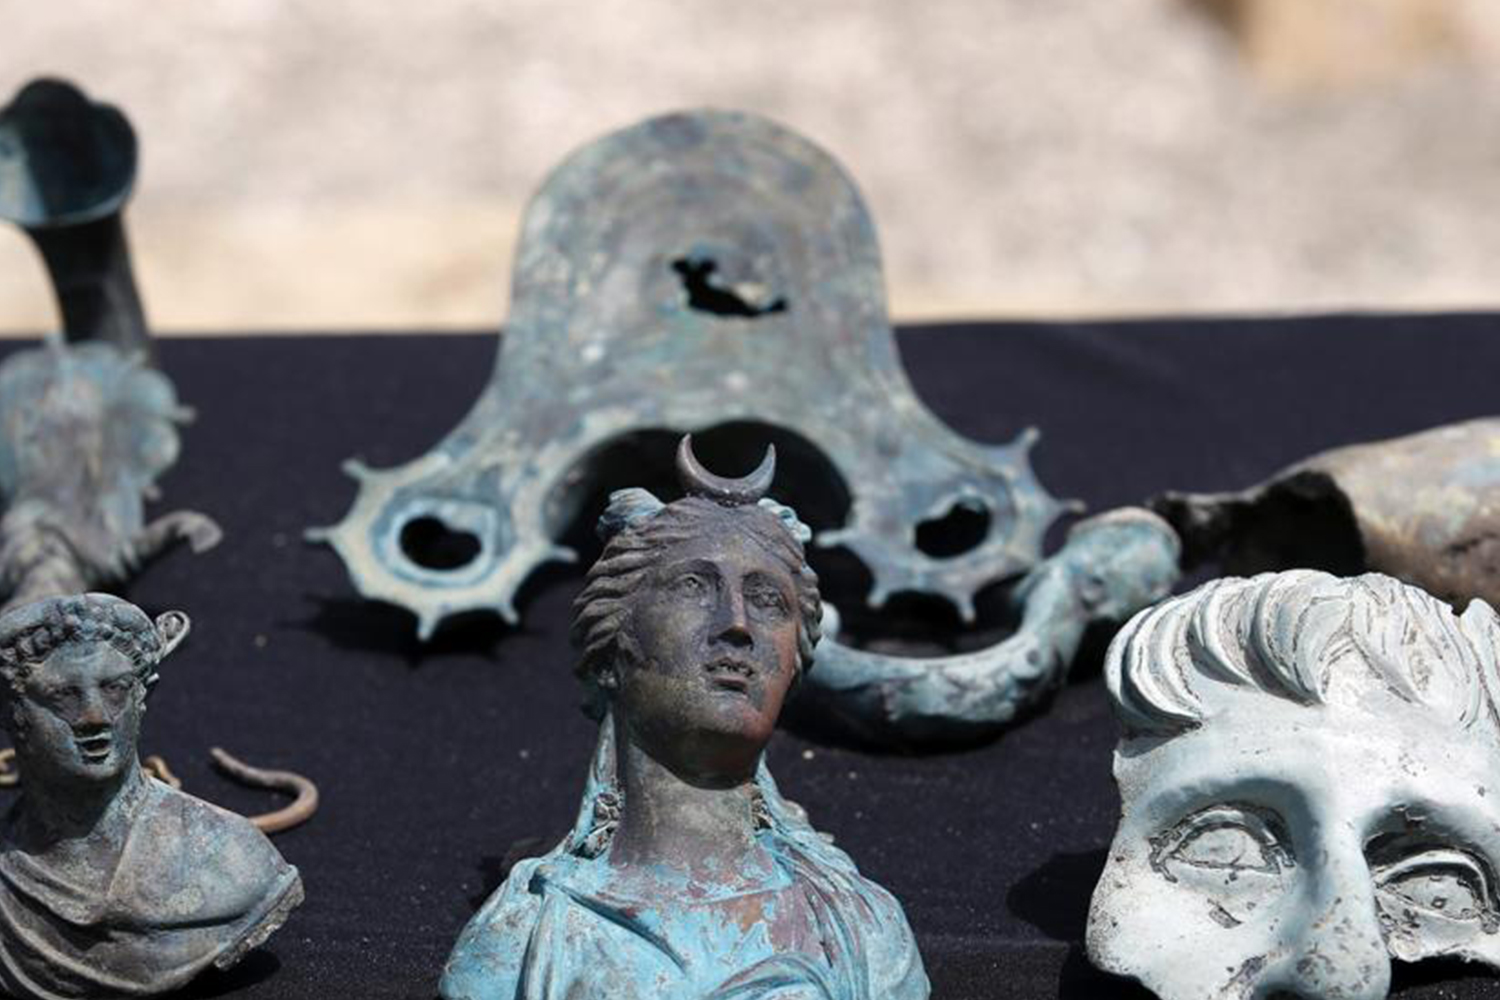 Descubren un antiguo tesoro romano hundido en las aguas de Israel